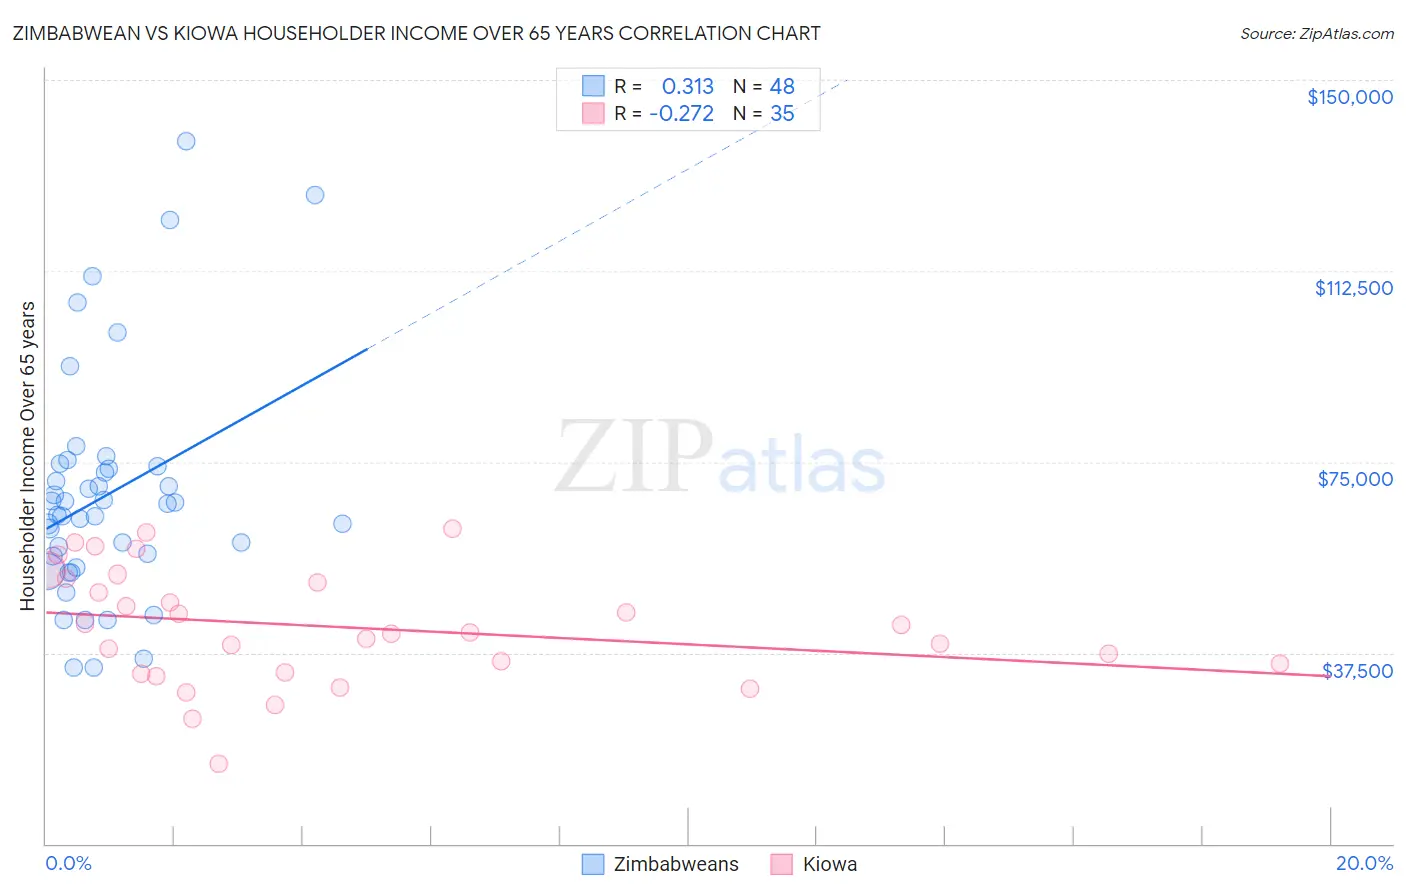 Zimbabwean vs Kiowa Householder Income Over 65 years